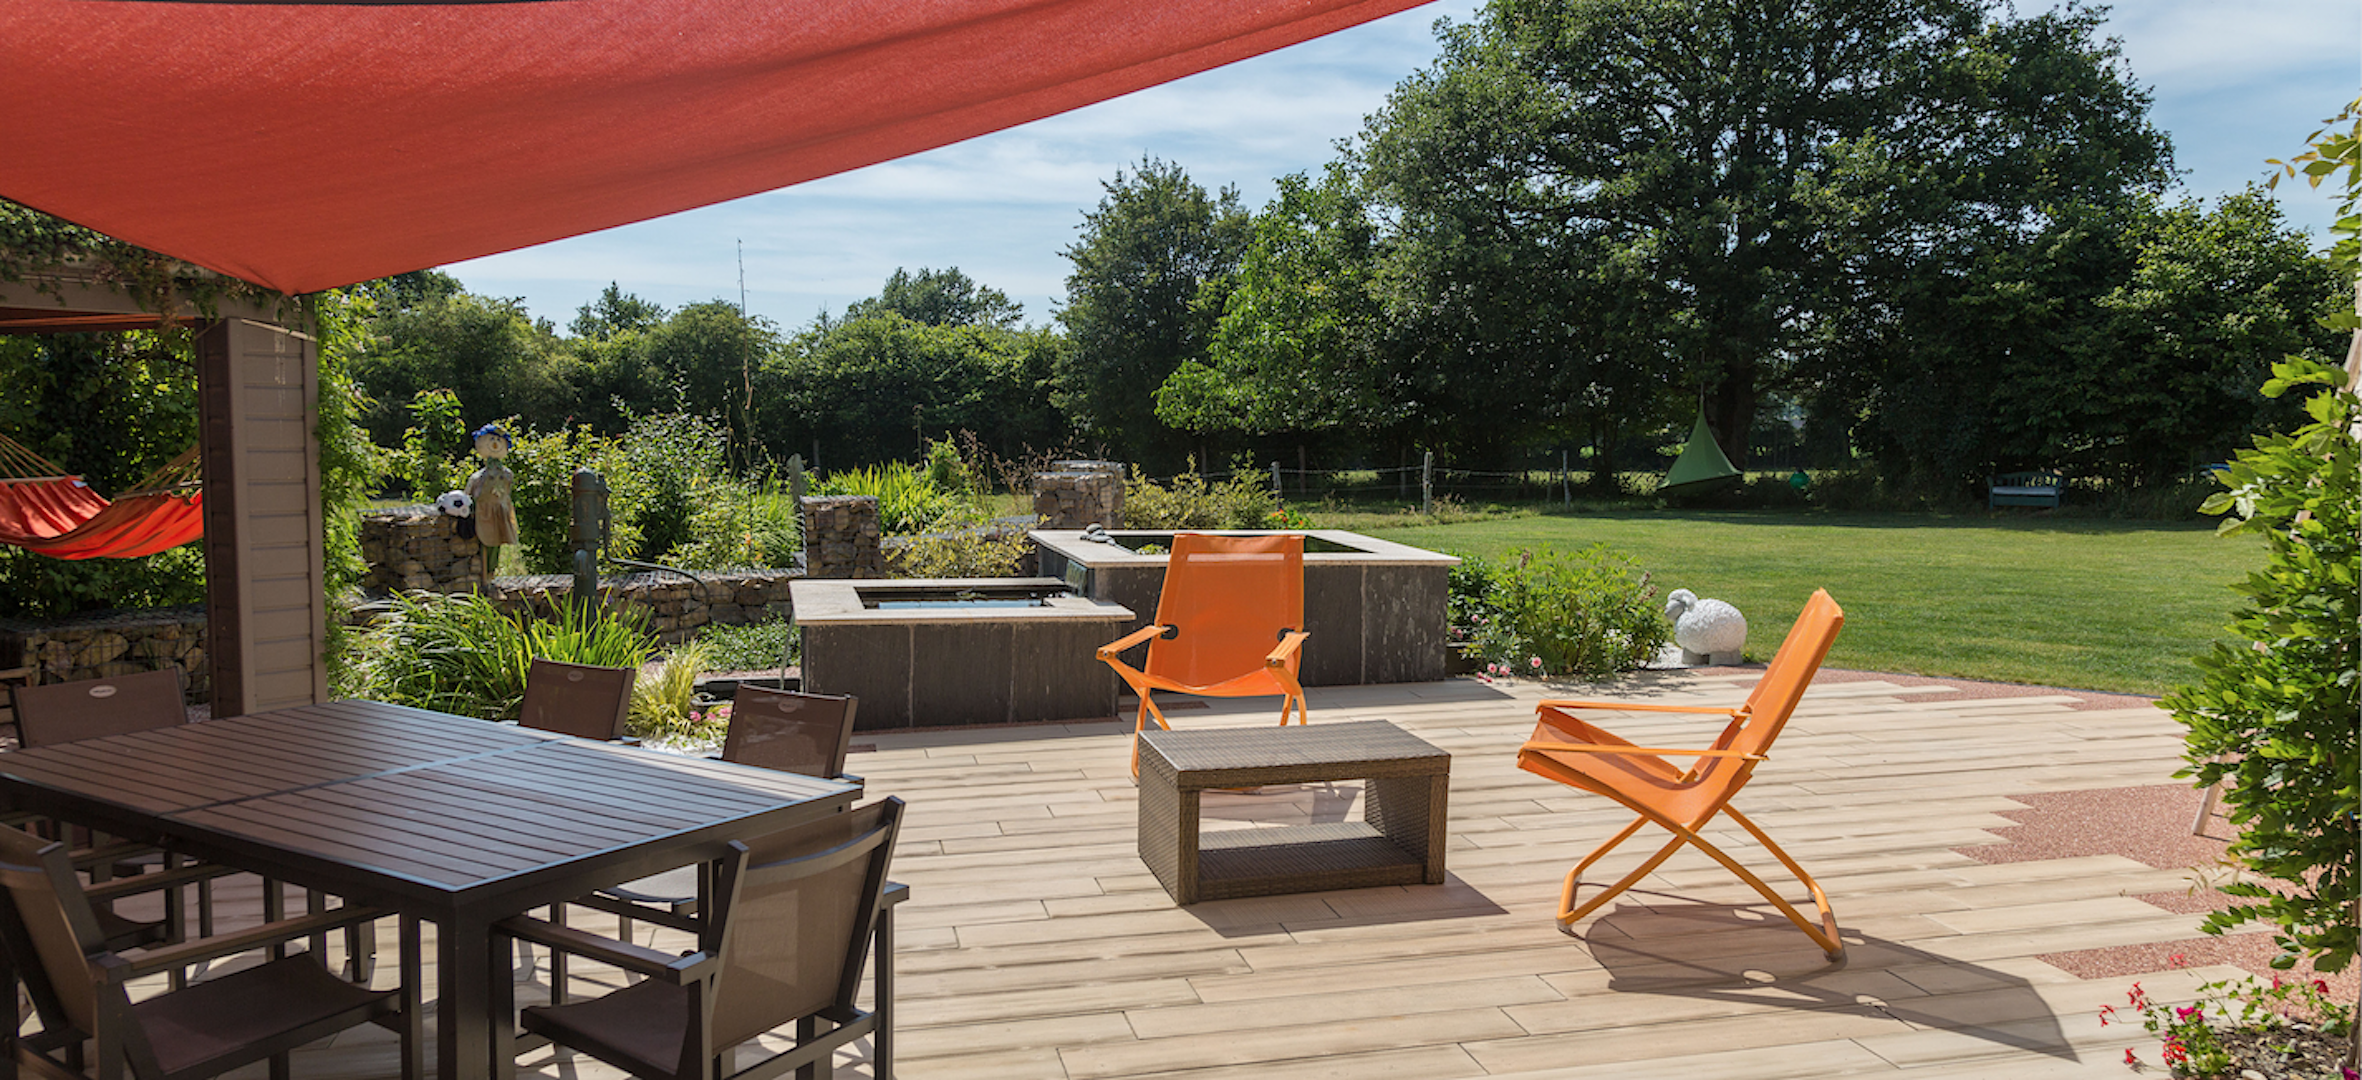 Posséder un jardin, un privilège ! Libre à chacun d'aménager cet espace extérieur en fonction de ses goûts avec du mobilier outdoor en bois, en résine tressée, en métal... © Daniel Moquet